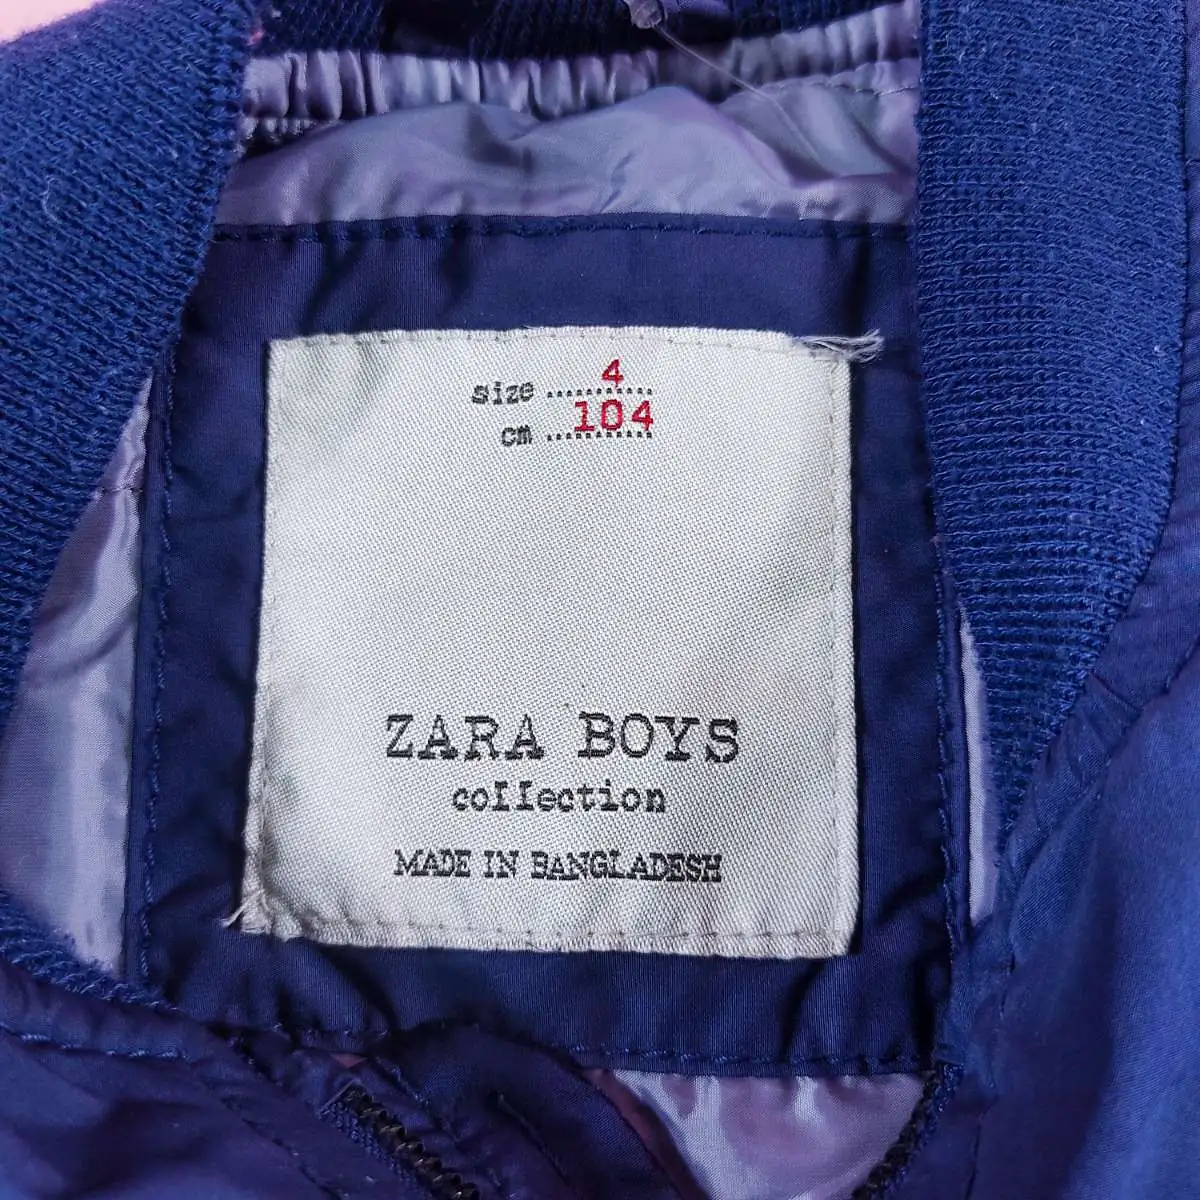 ZARA BOYS เสื้อกันหนาวแขนยาวผ้าร่มสีกรม 4  